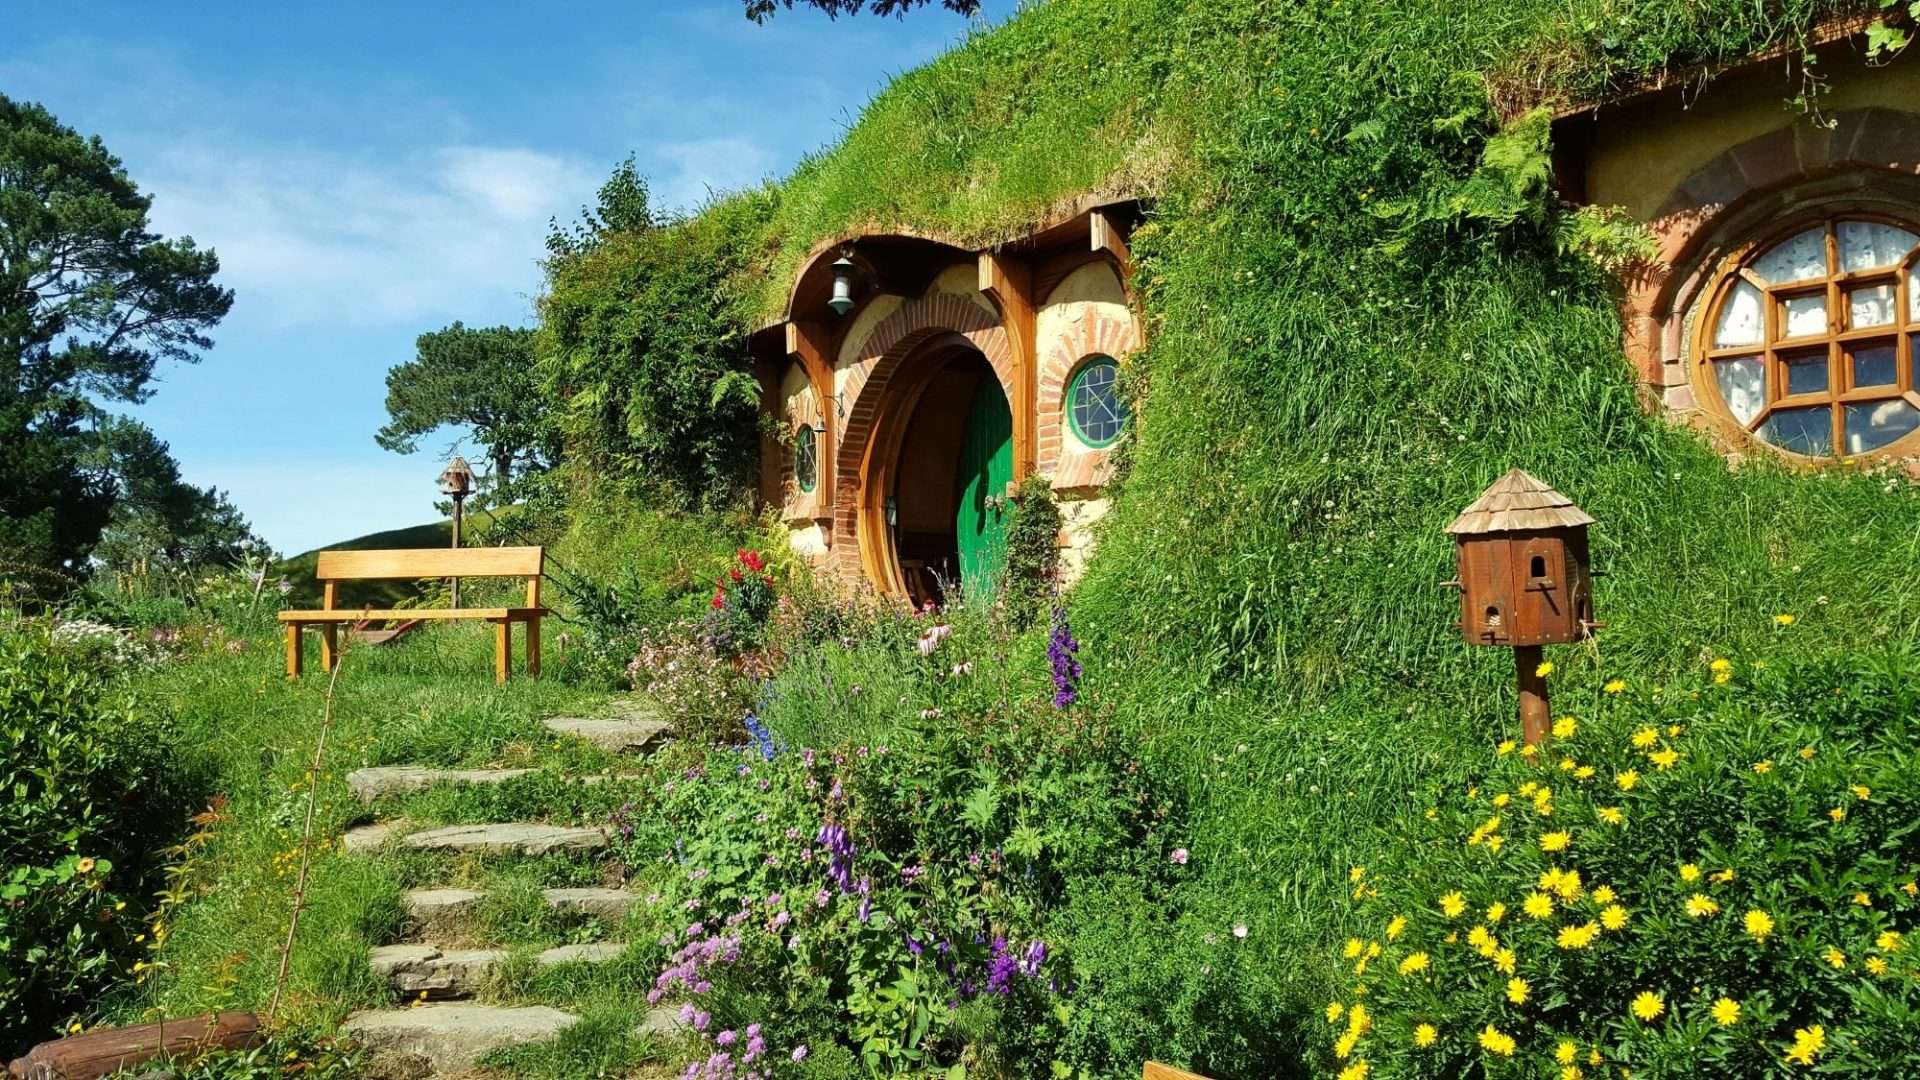 Hobbit home